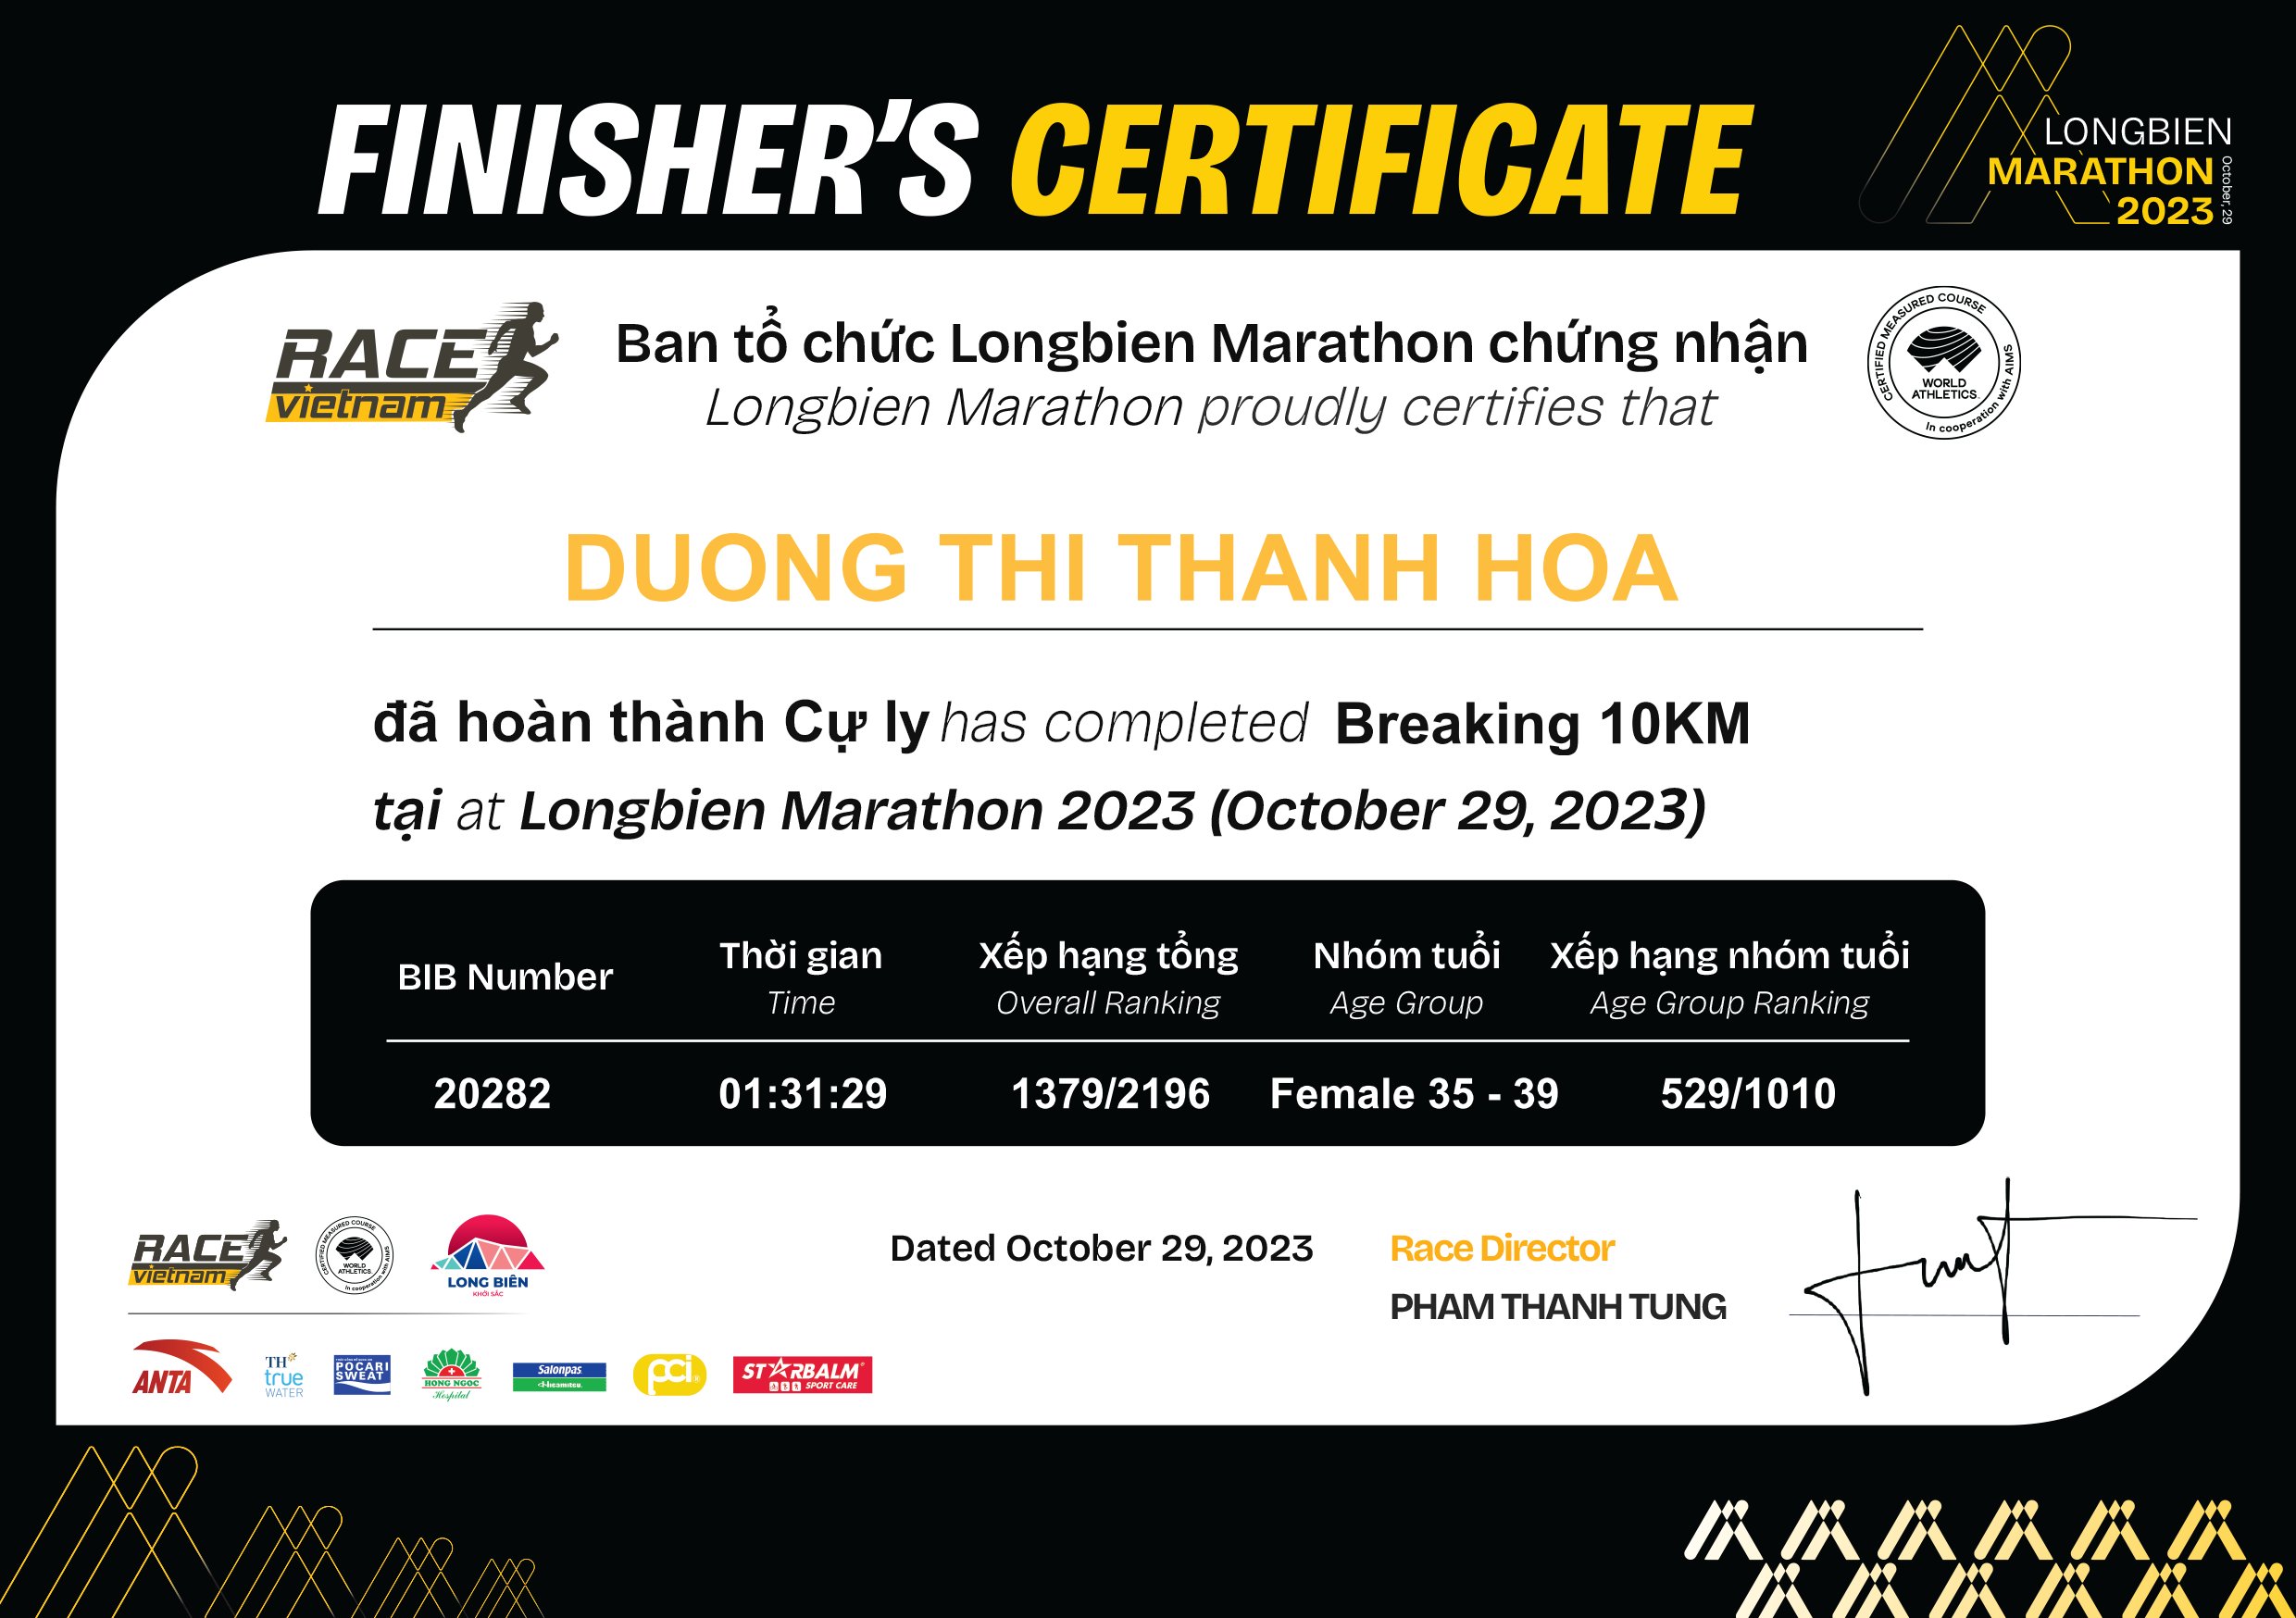 20282 - Duong Thi Thanh Hoa